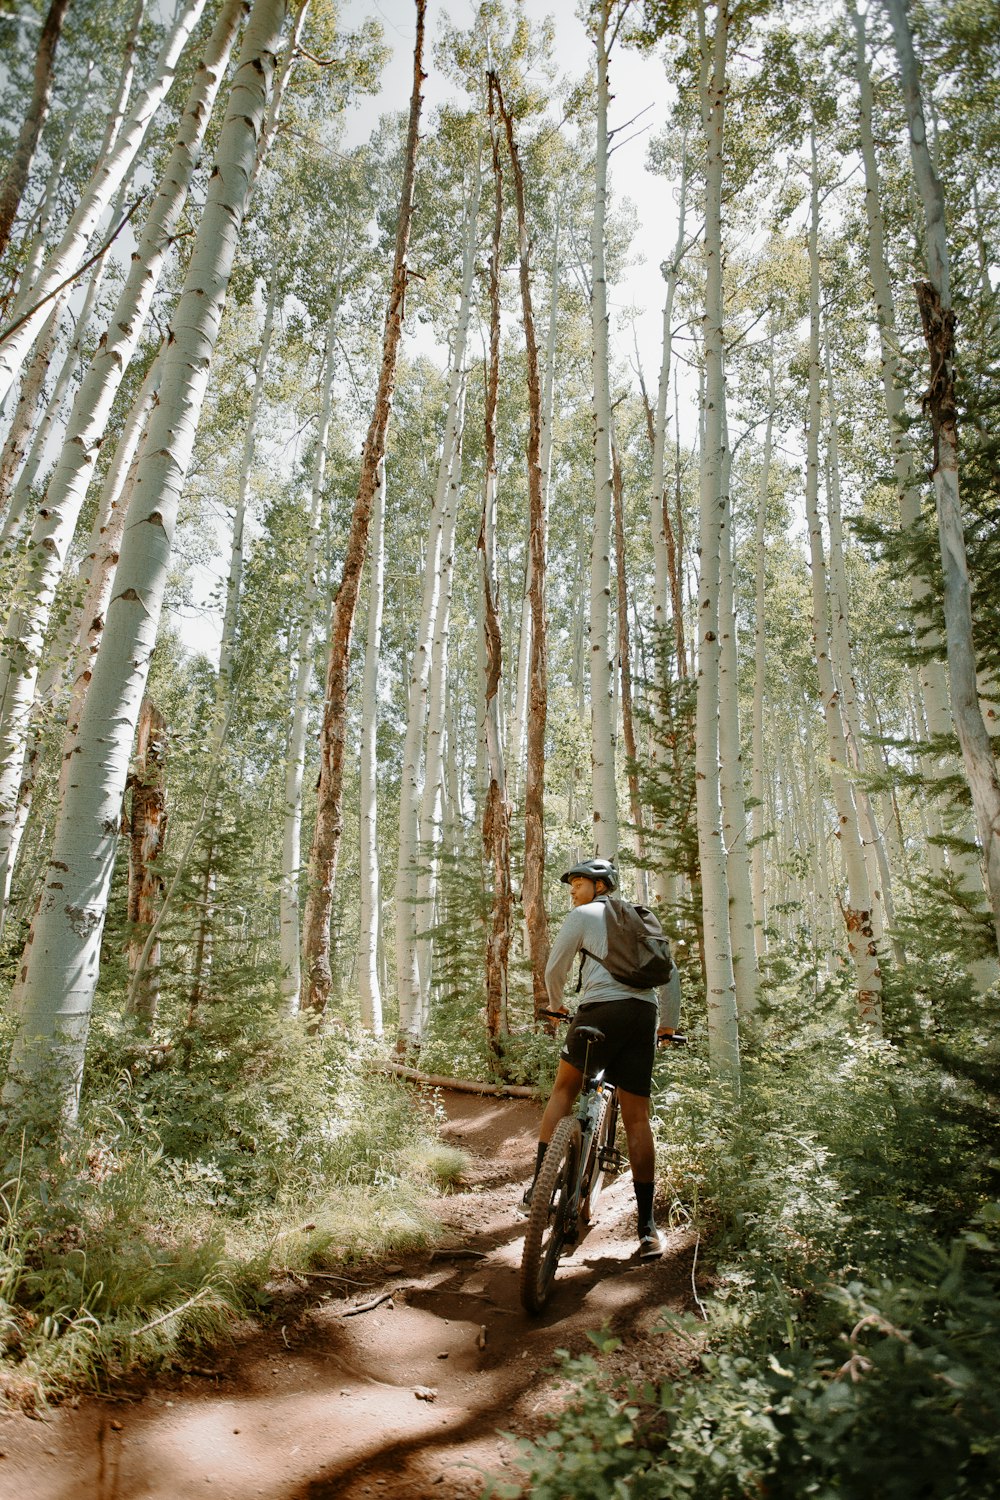 검은 셔츠와 검은 반바지를 입은 남자가 낮 동안 숲에서 자전거를 타고 있다